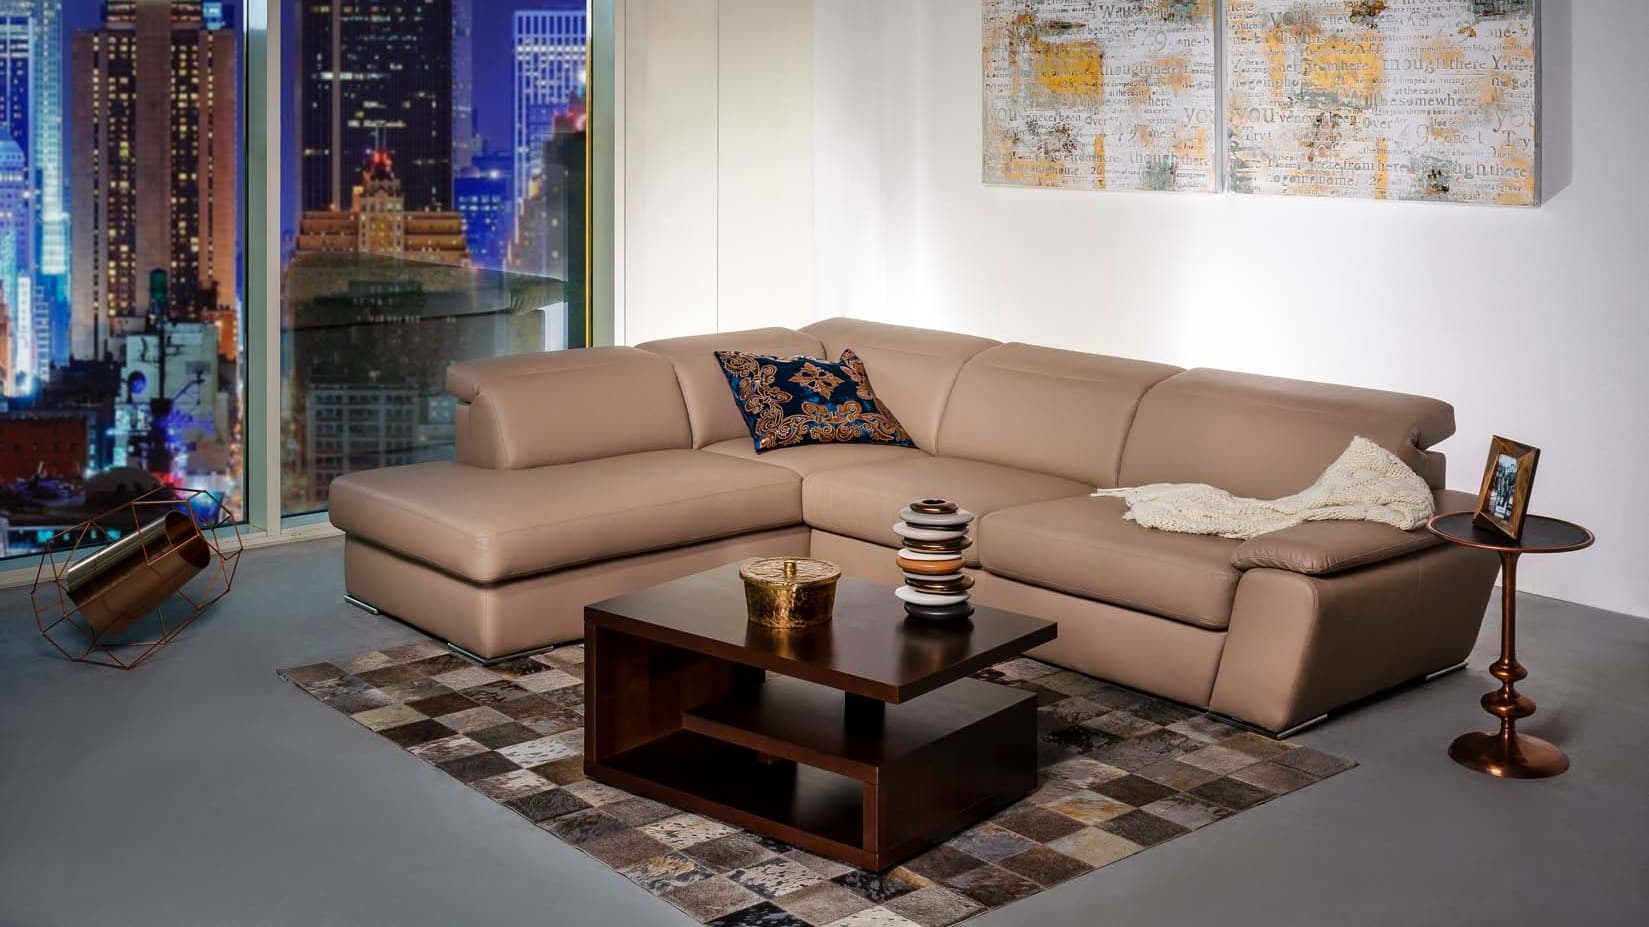 A Manhattan I sarokottomán kanapé az a bútordarab, amelyiket bátran térben is elhelyezheted a nappalidban.
